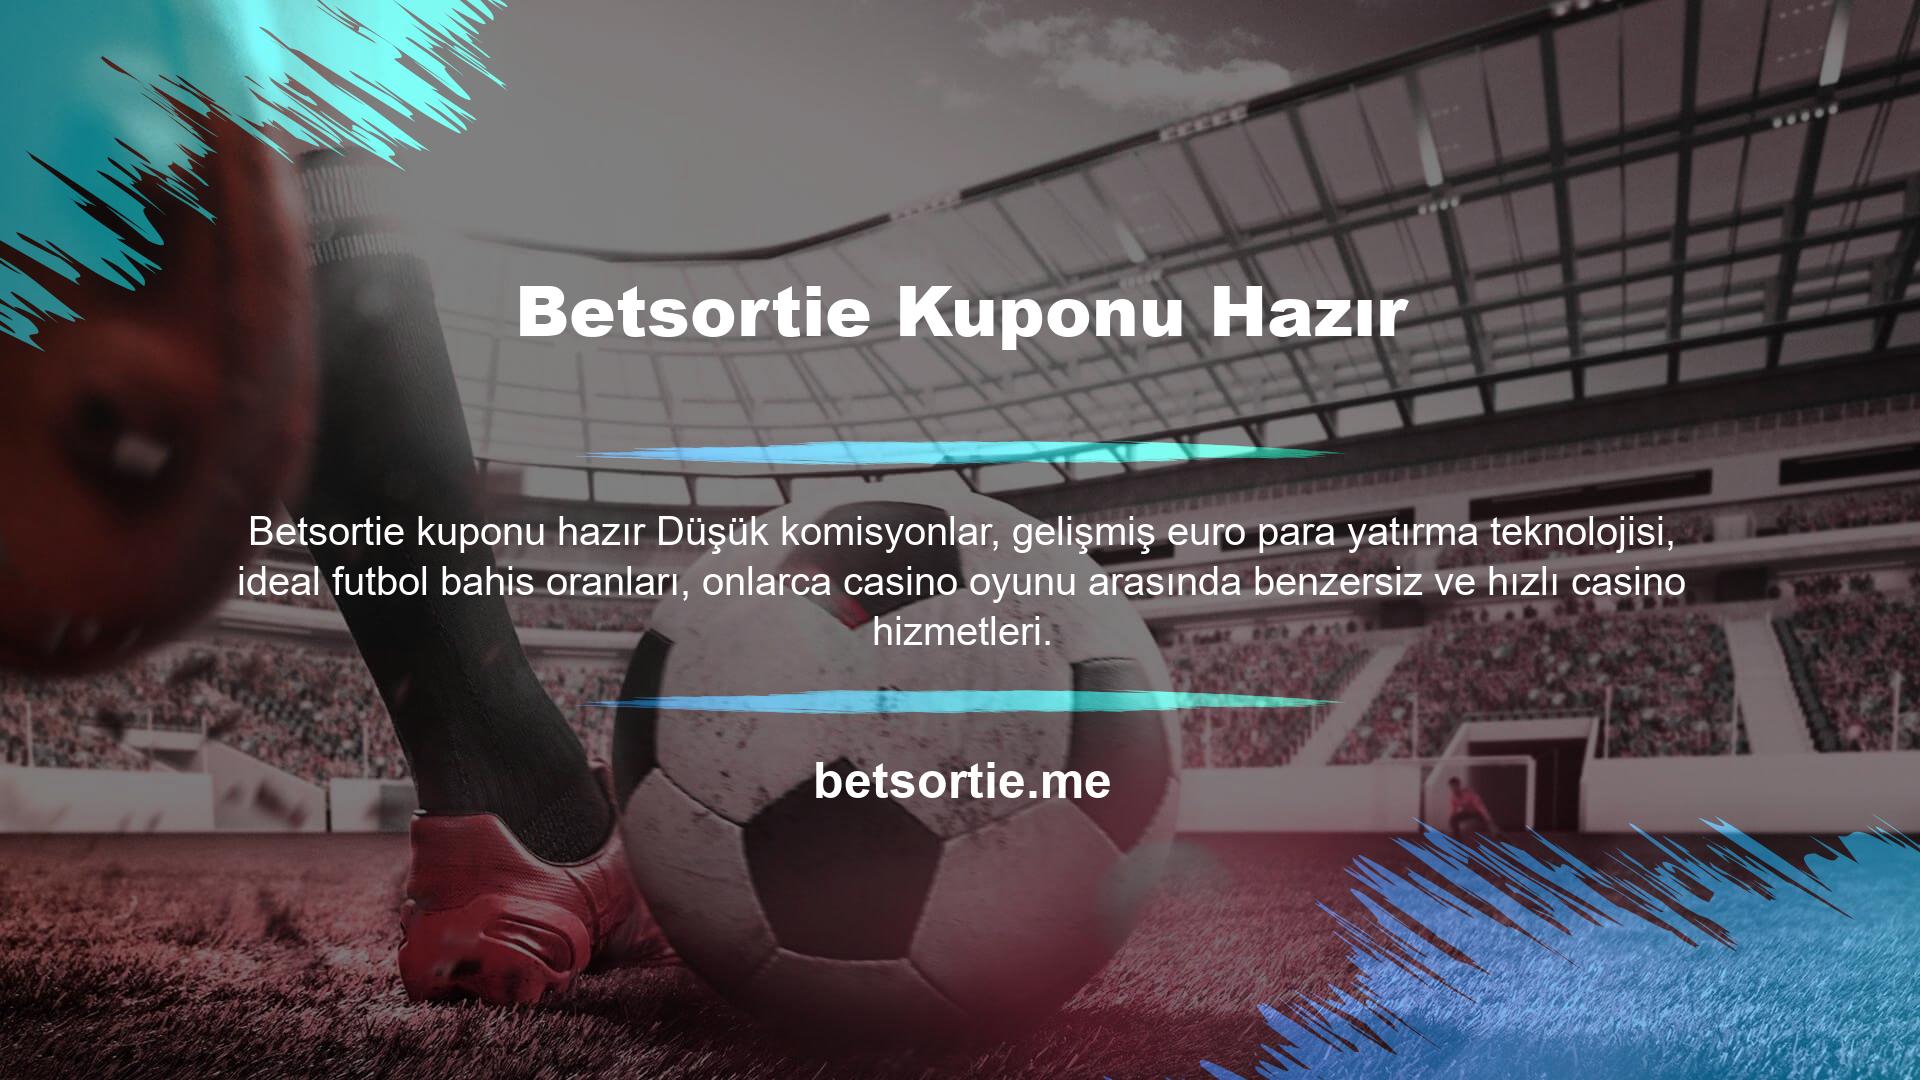 Betsortie Live TV platformunda Avrupa'nın birçok yerindeki tüm spor karşılaşmalarını Betsortie kuponu hazır olarak izlemeye hazır olun! Ücretsiz jeton kazanmak ve Betsortie popüler hizmetlerinin keyfini çıkarmak için şimdi kaydolun